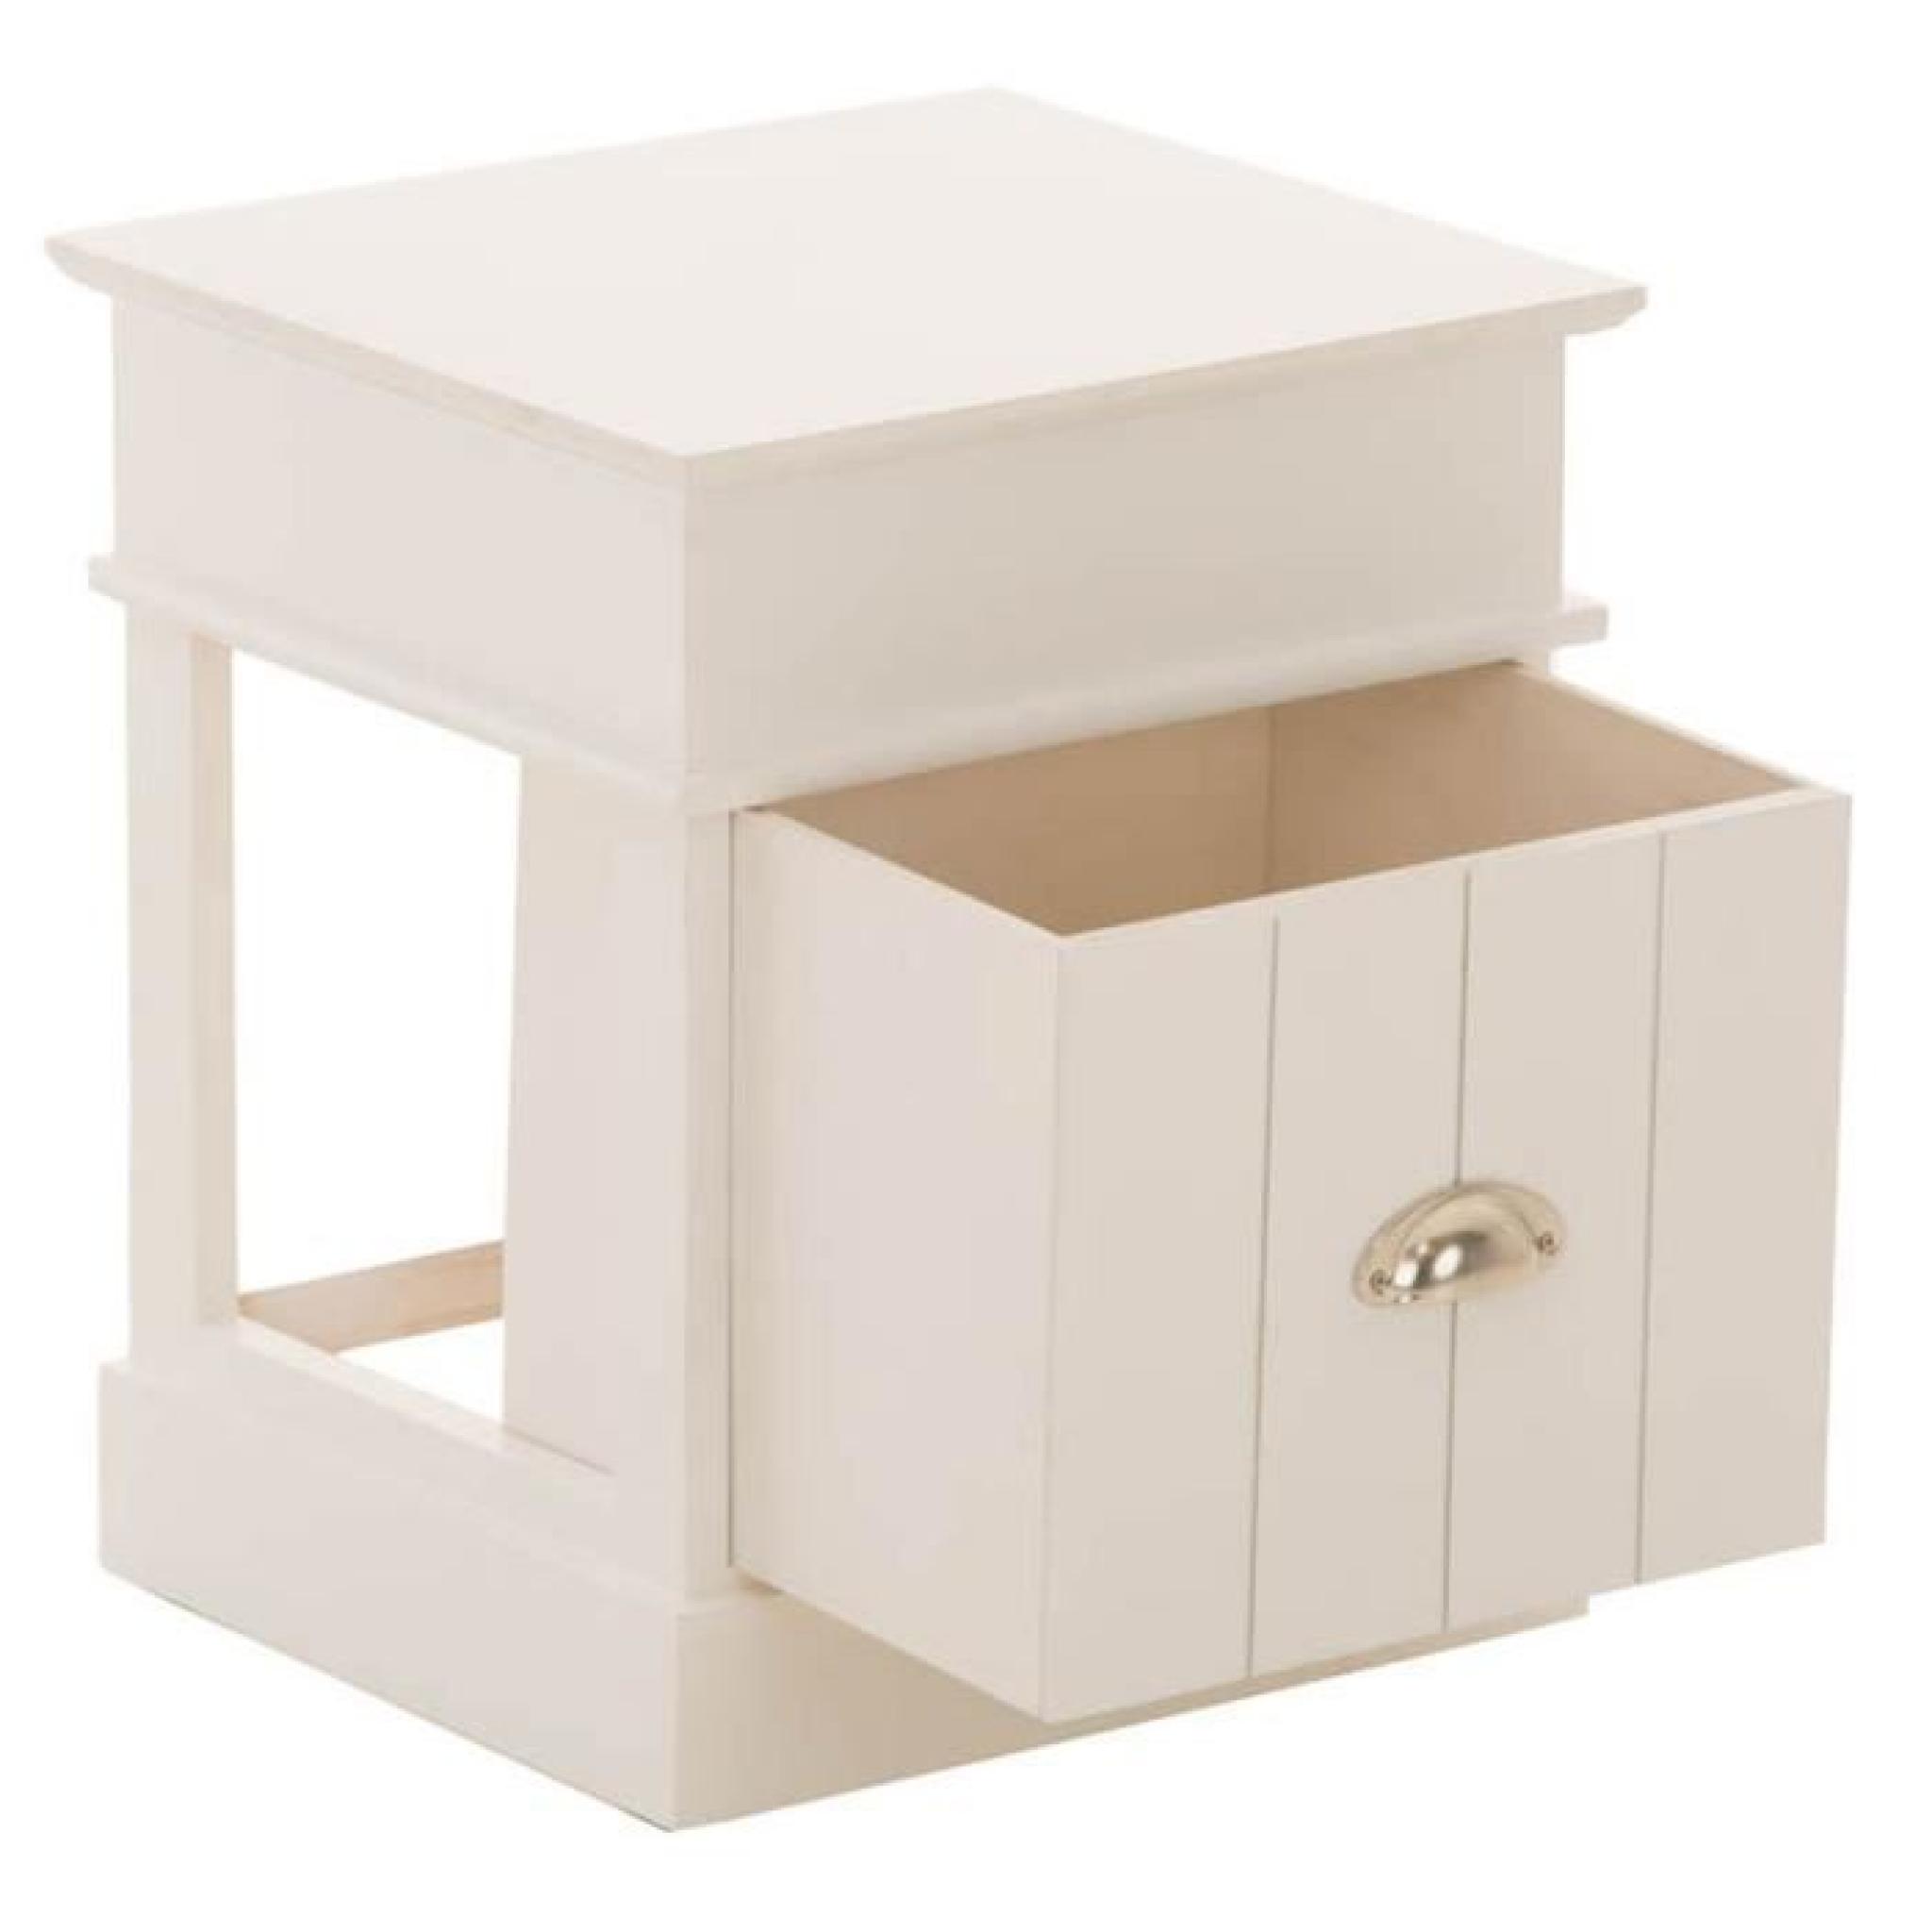 Ensemble de 2 tables de chevet de couleur blanche en bois avec 1 compartiment et 1 tiroir - Dim : H 45.5 x L 38 x P 35 cm pas cher